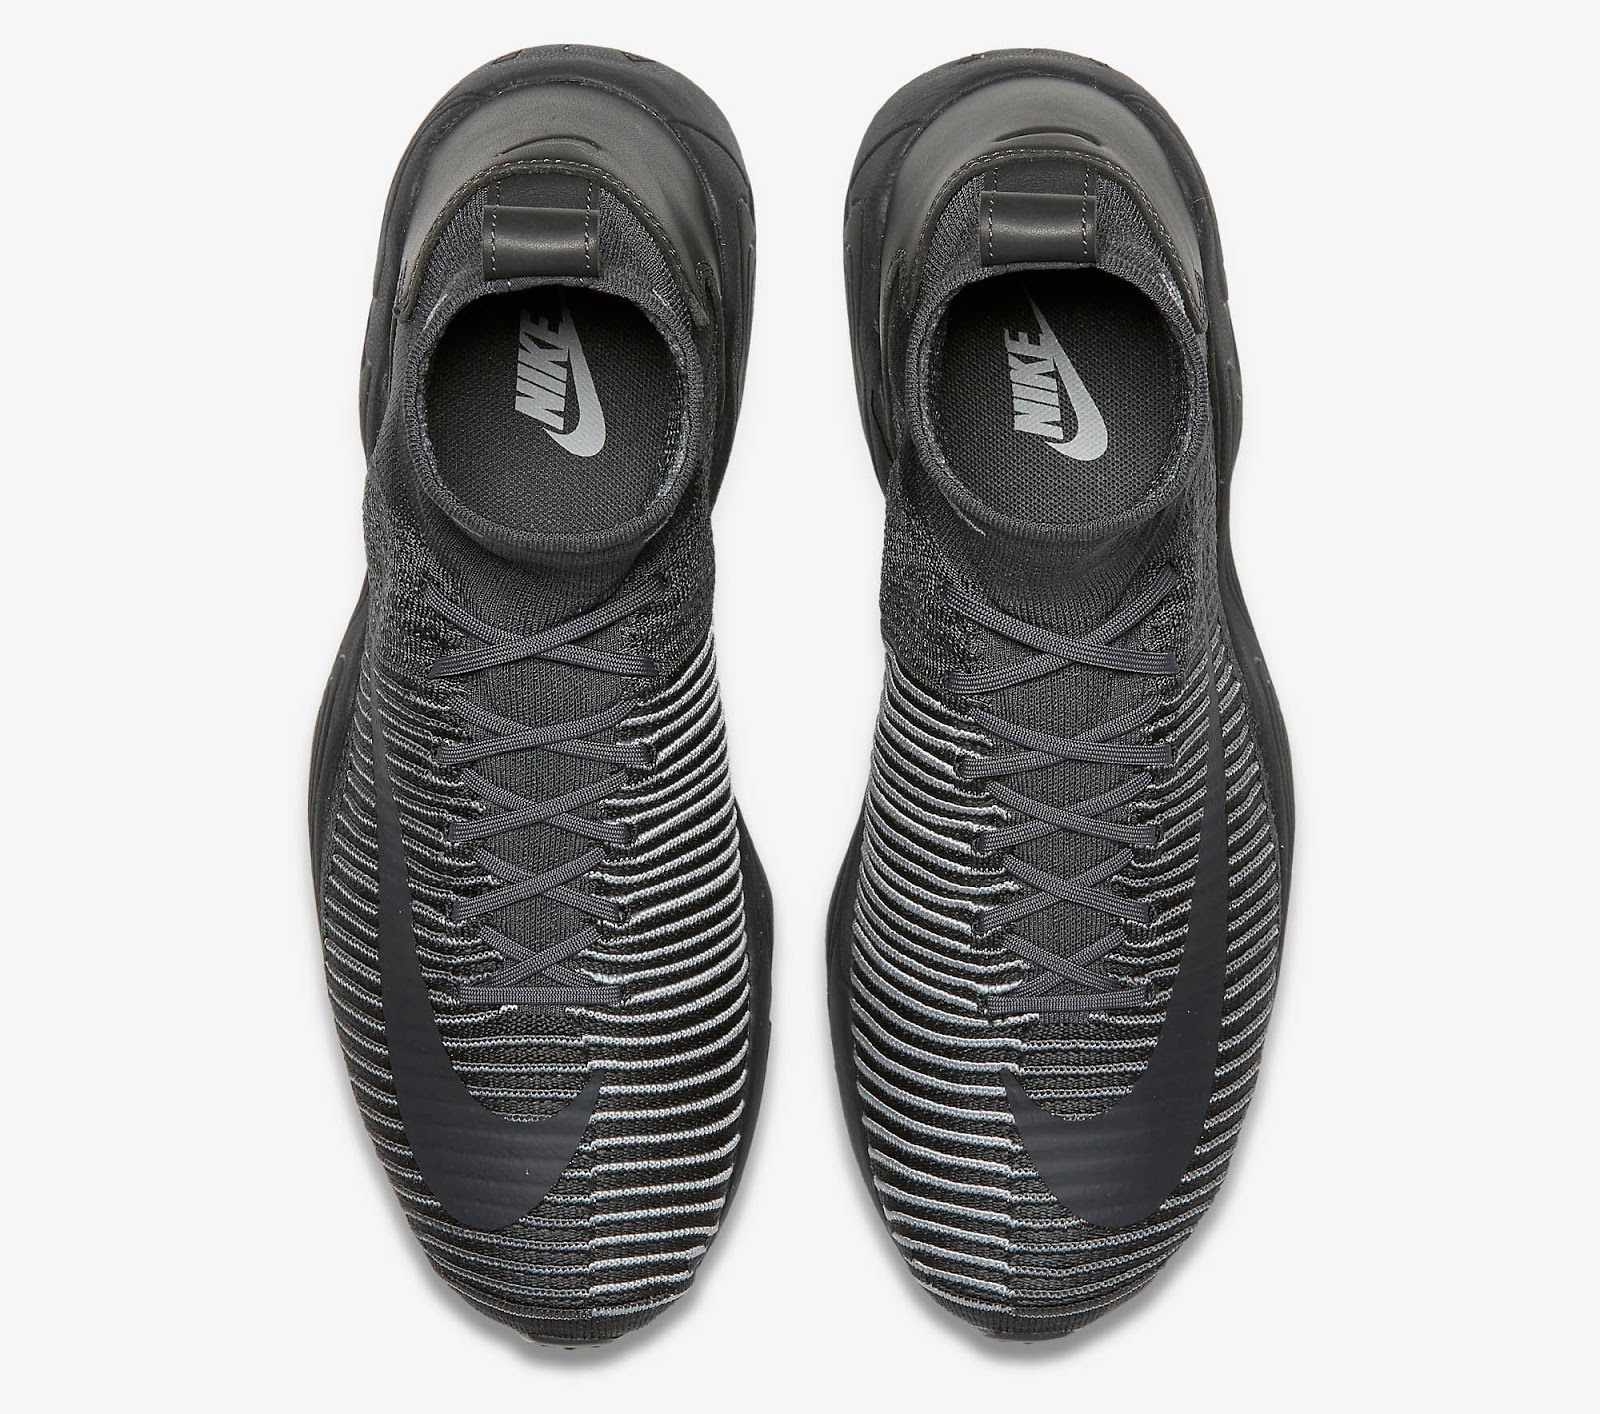 Stealth Nike Zoom Mercurial Flyknit Sneakers Leaked - Footy Headlines